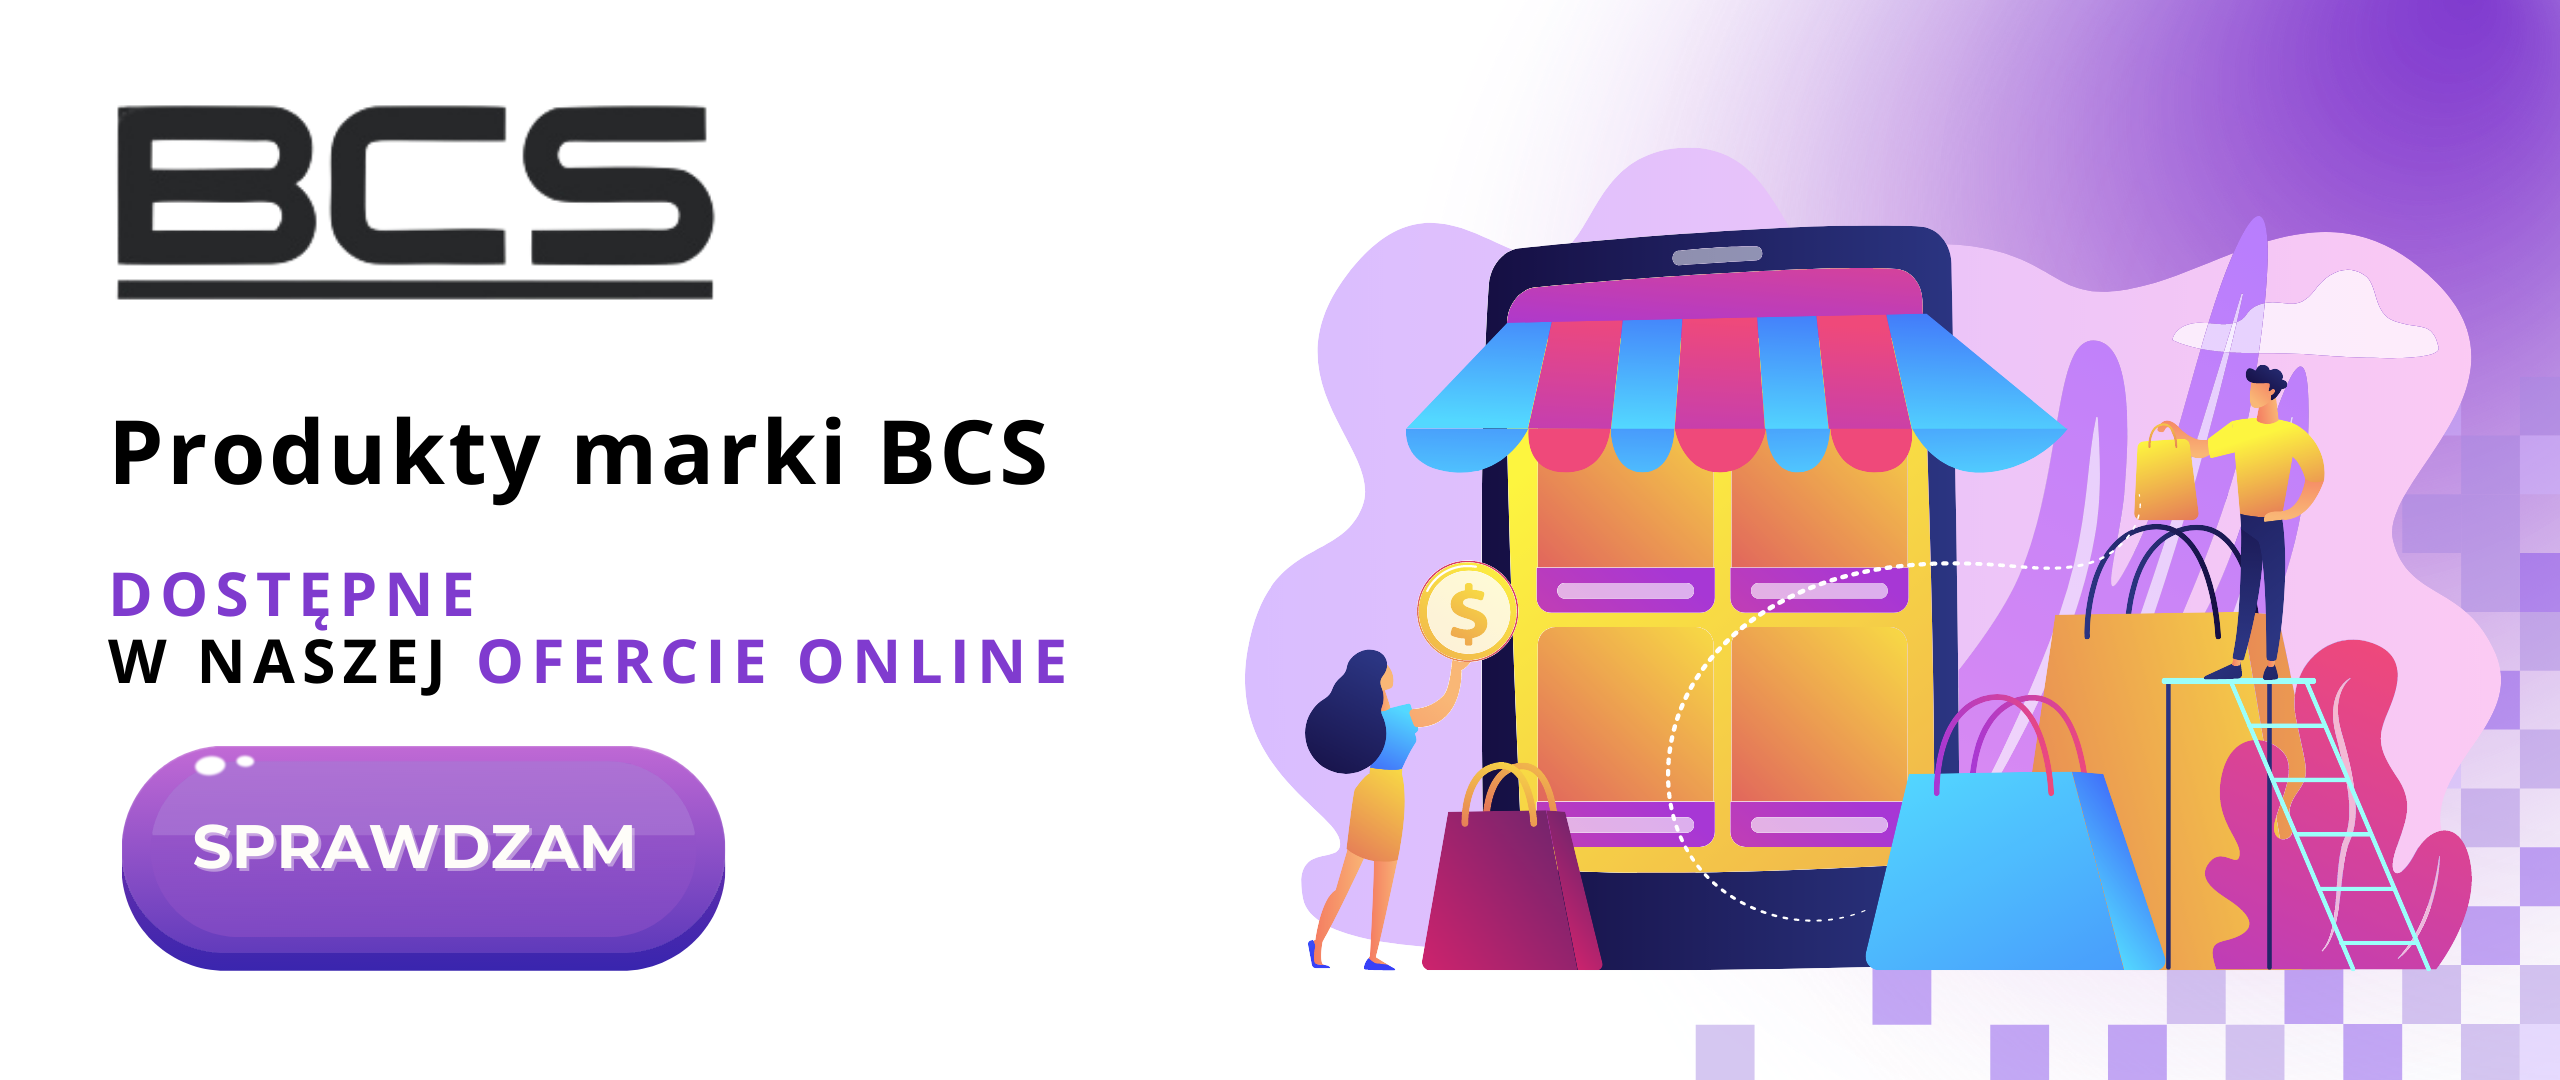 BCS_produkty dostępne on-line